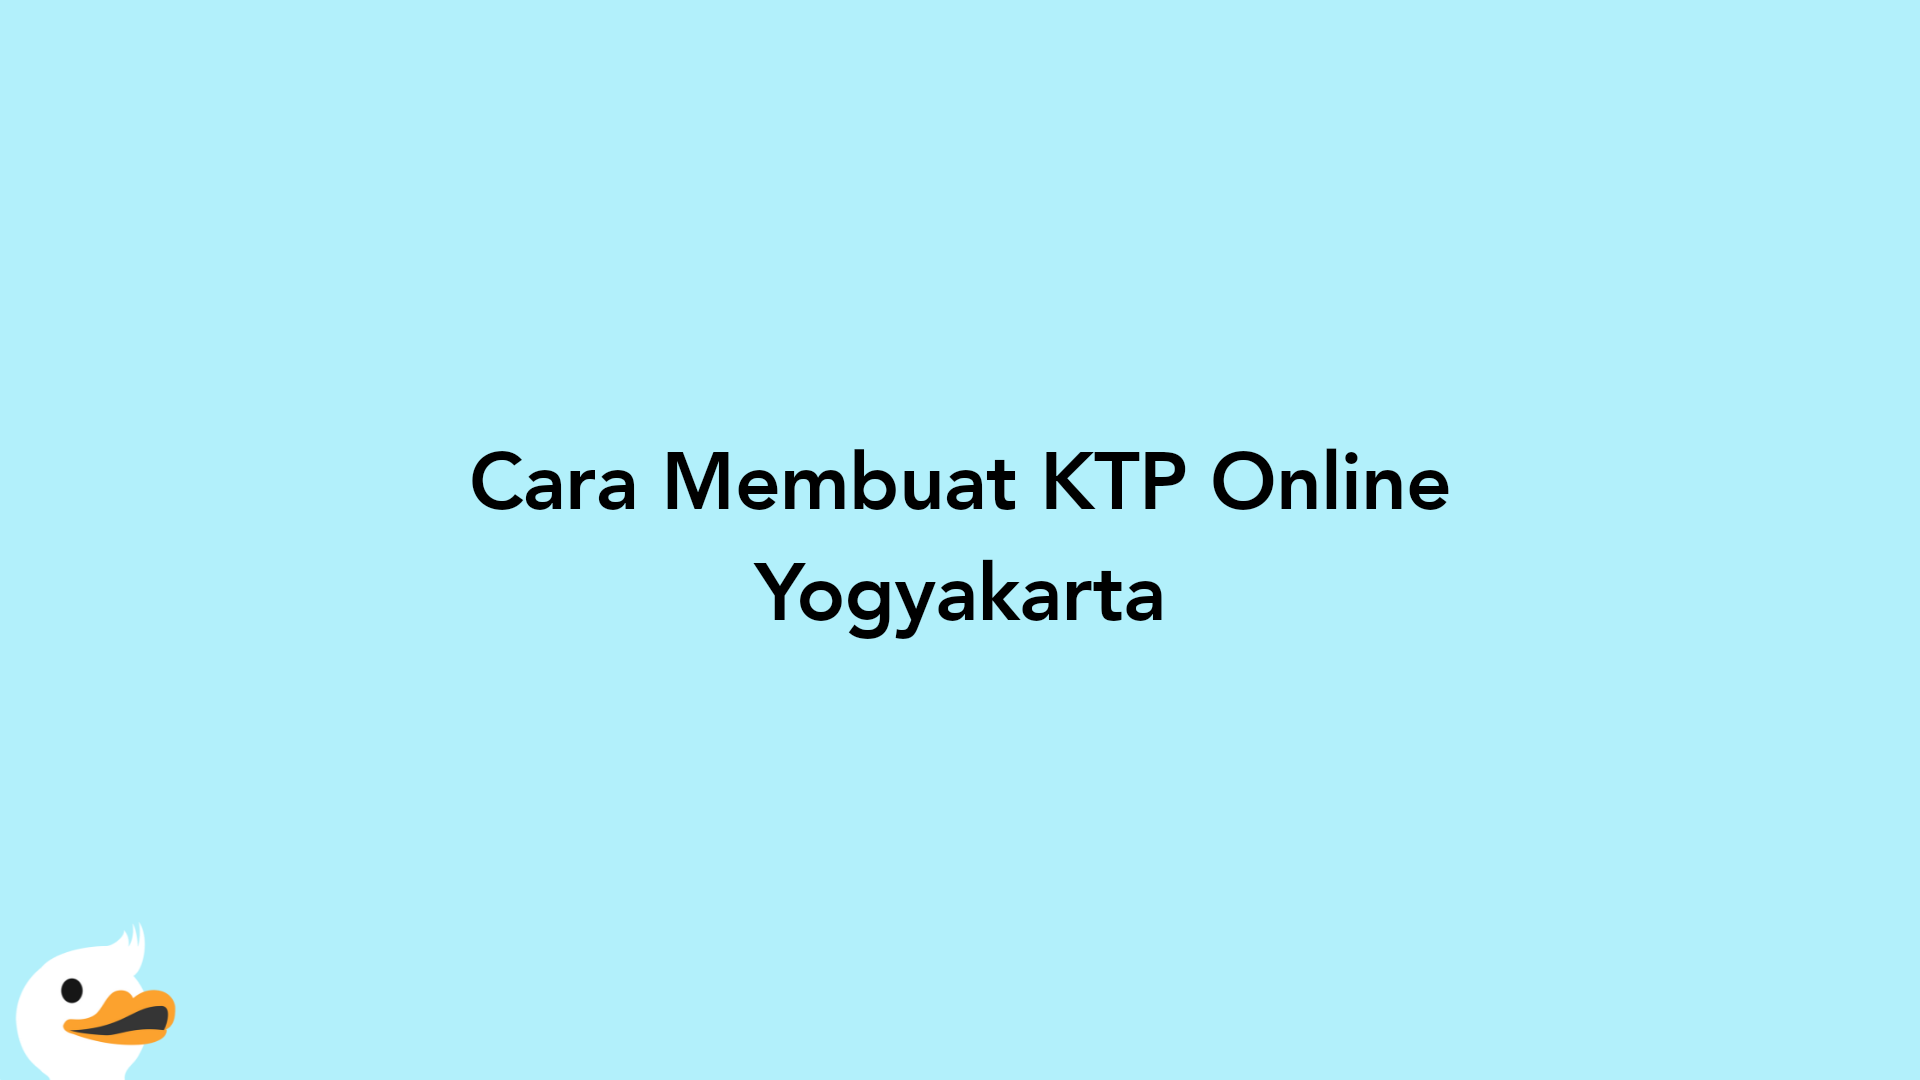 Cara Membuat KTP Online Yogyakarta